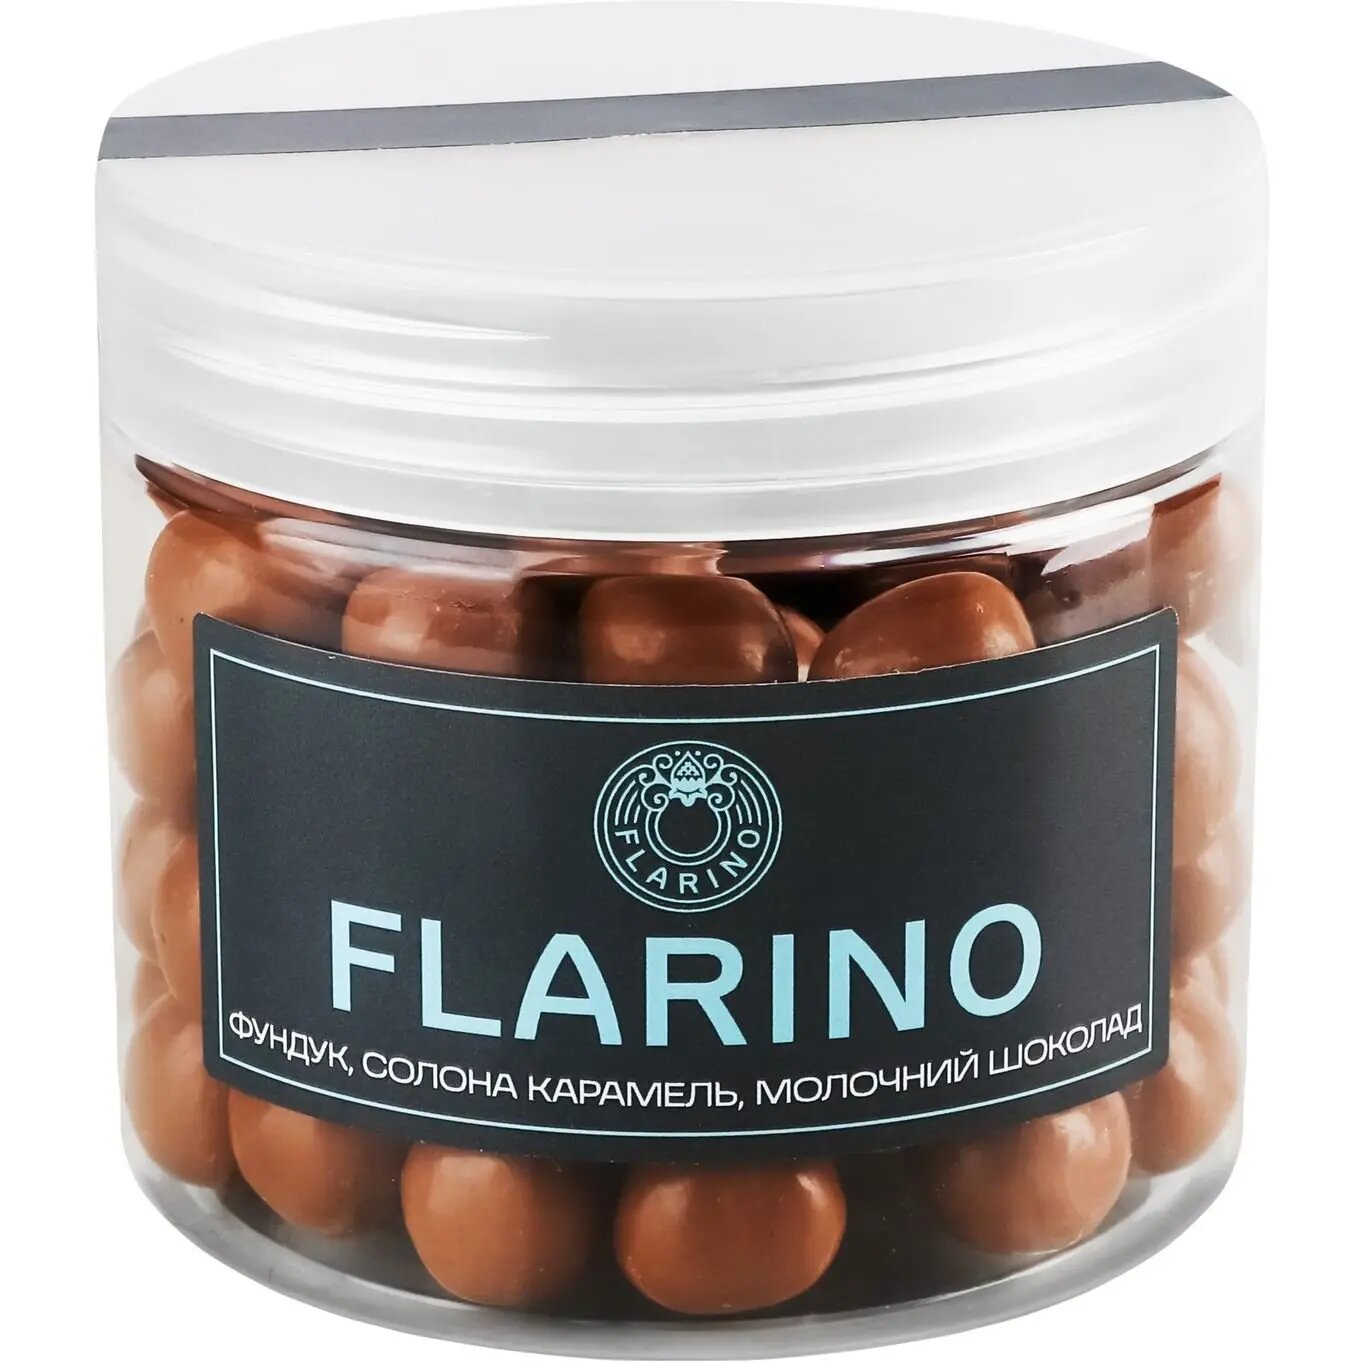 Фундук Flarino у солоній карамелі покритий молочним шоколадом 180 г (924017) - фото 2